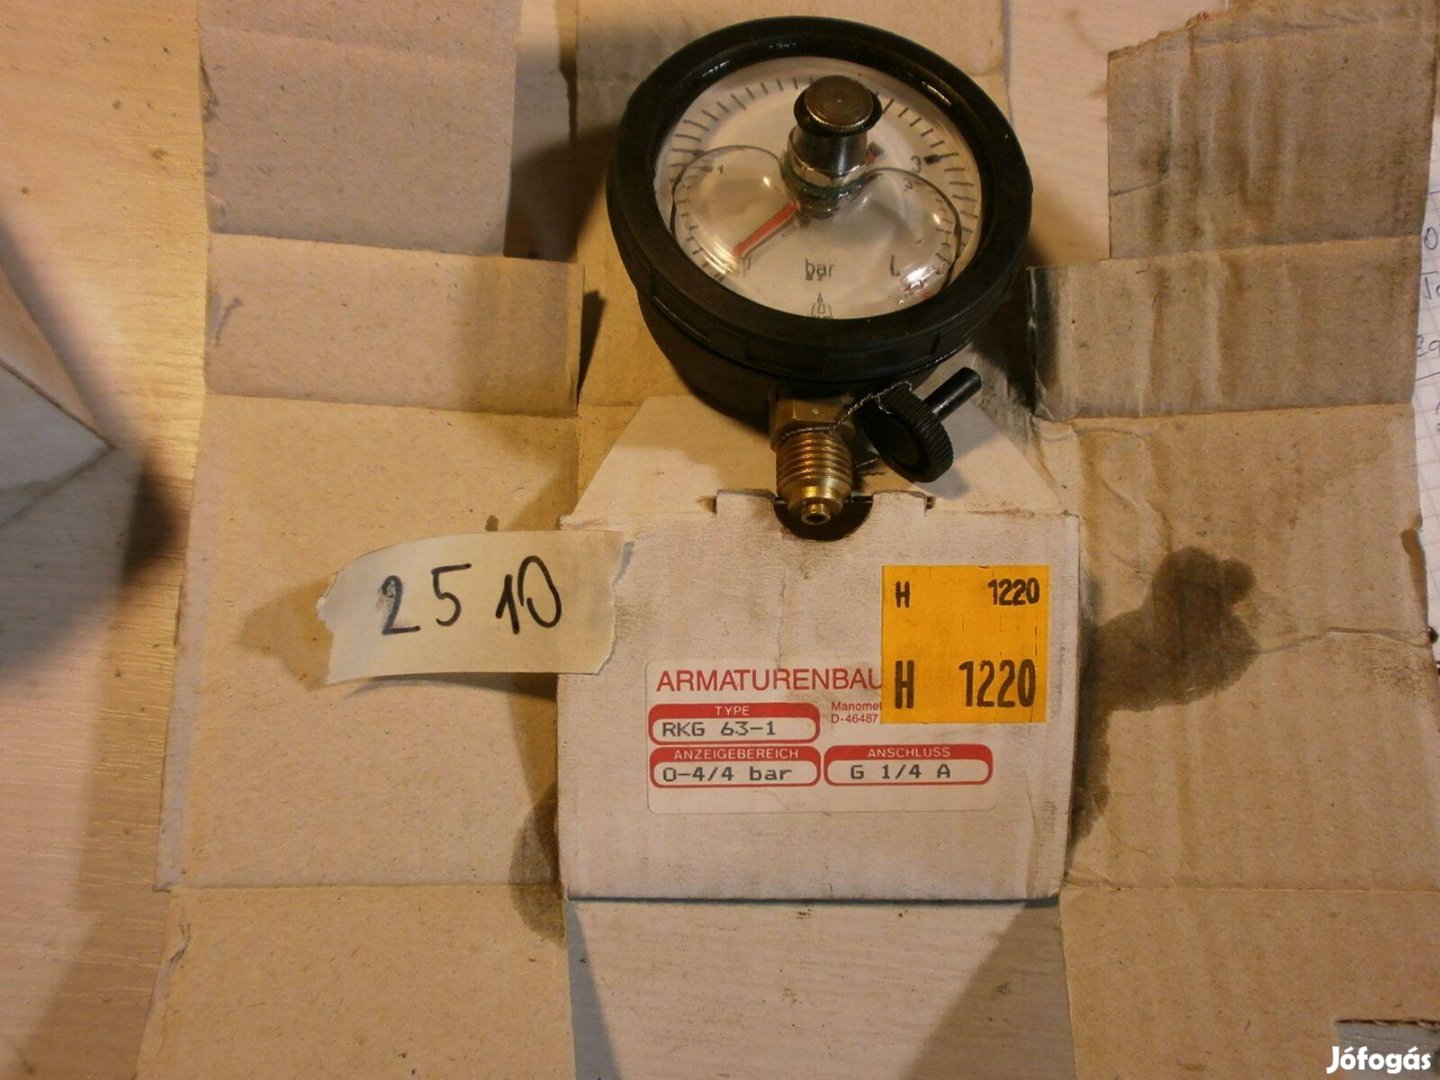 Nyomásmérő óra manométer csillapított ( 2510)